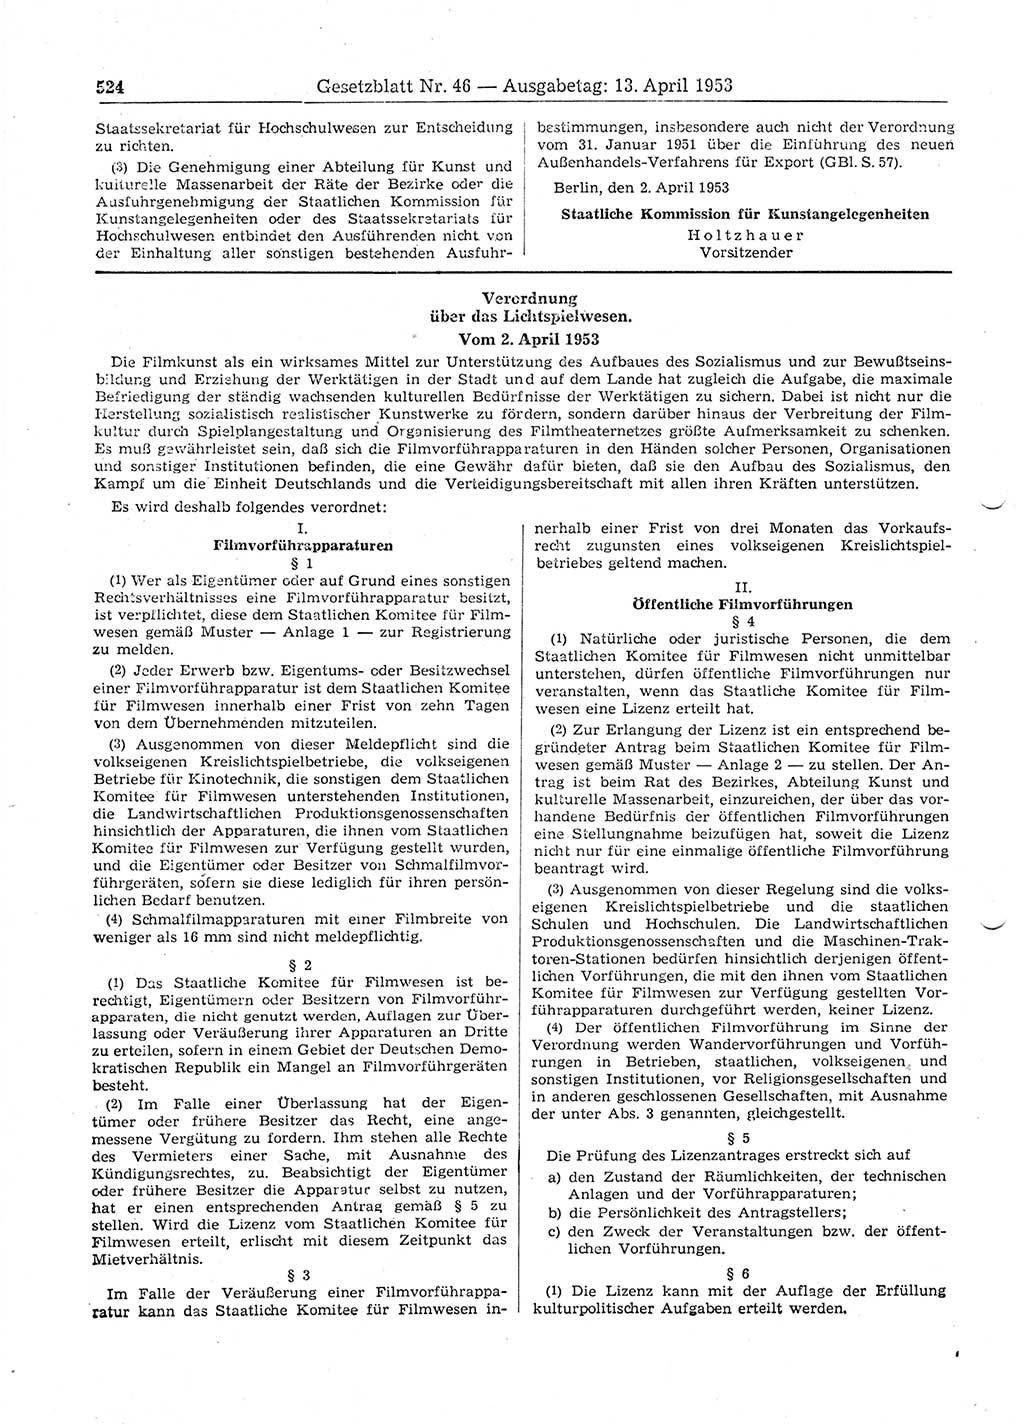 Gesetzblatt (GBl.) der Deutschen Demokratischen Republik (DDR) 1953, Seite 524 (GBl. DDR 1953, S. 524)